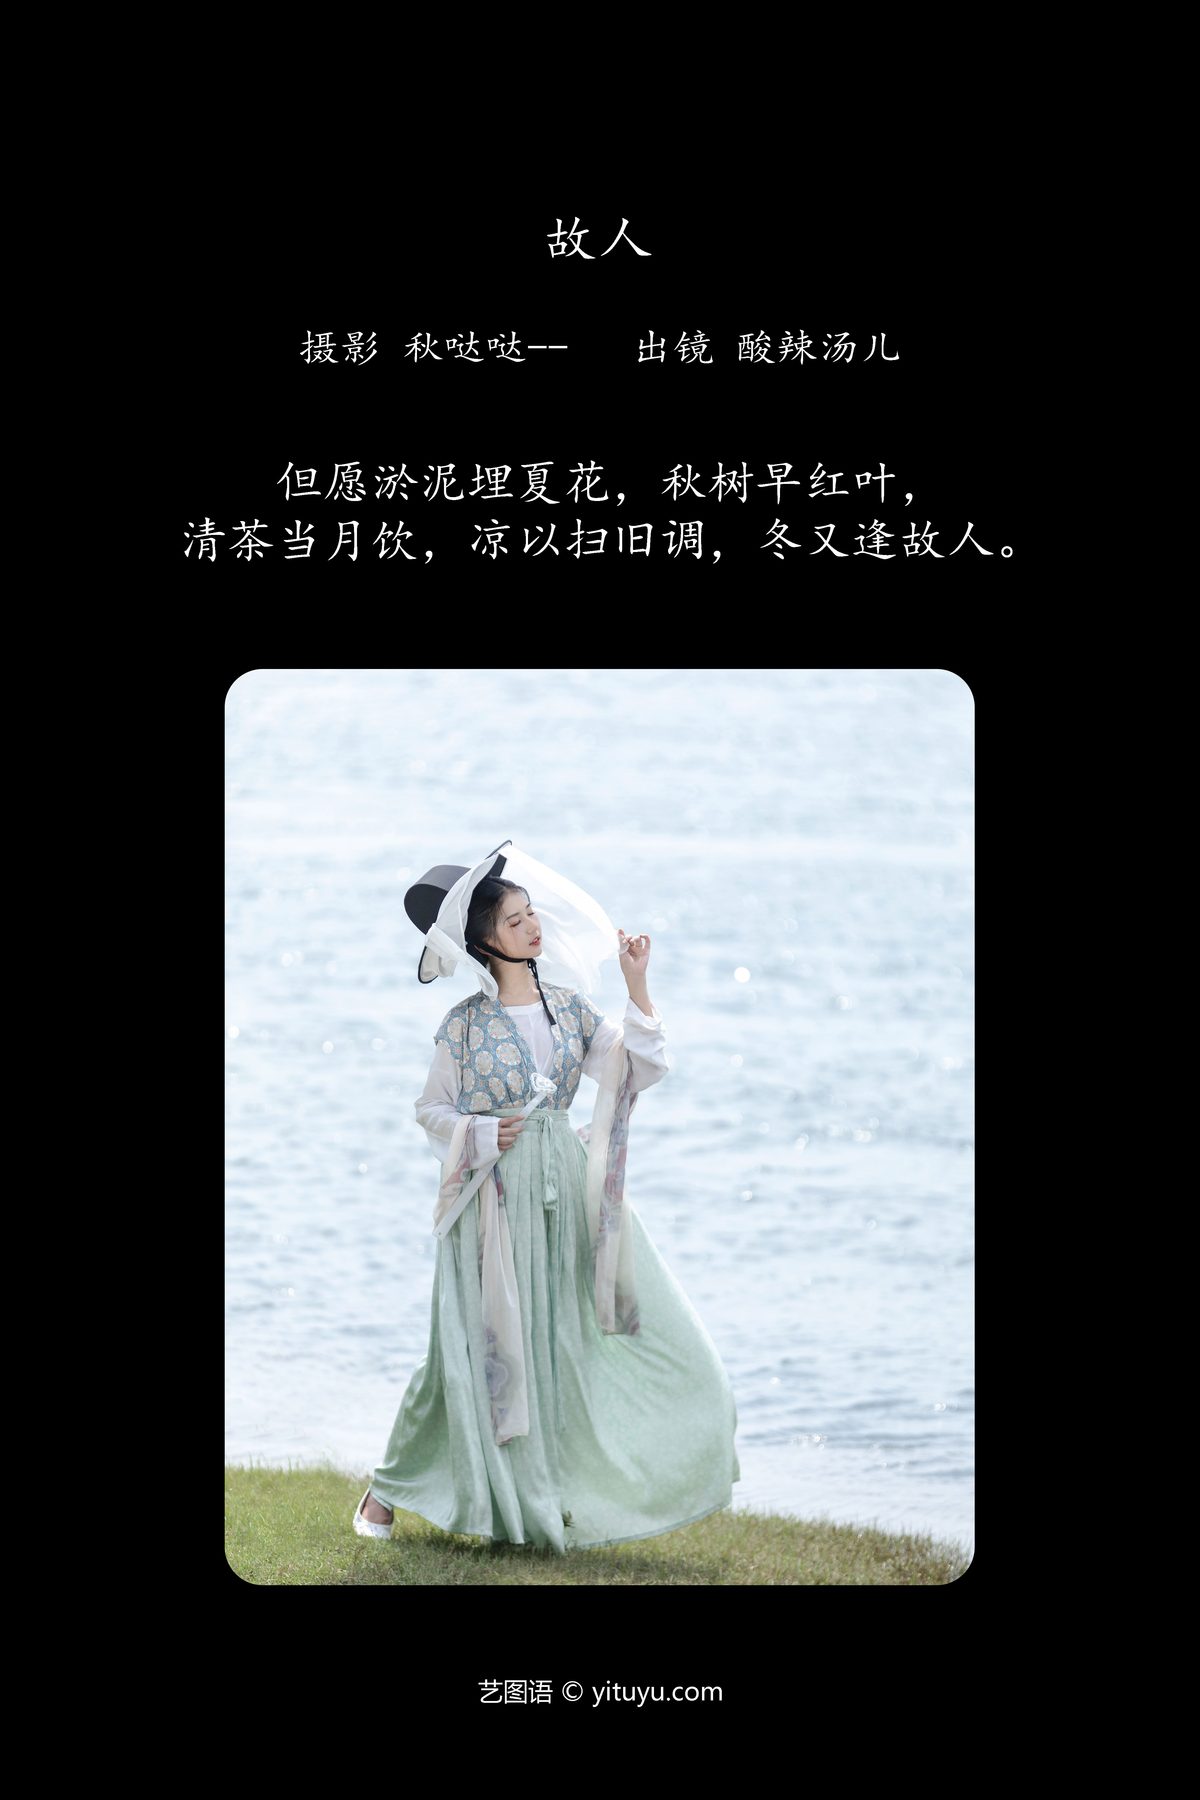 YiTuYu艺图语 Vol 6273 Suan La Tang Er 0001 1012236290.jpg